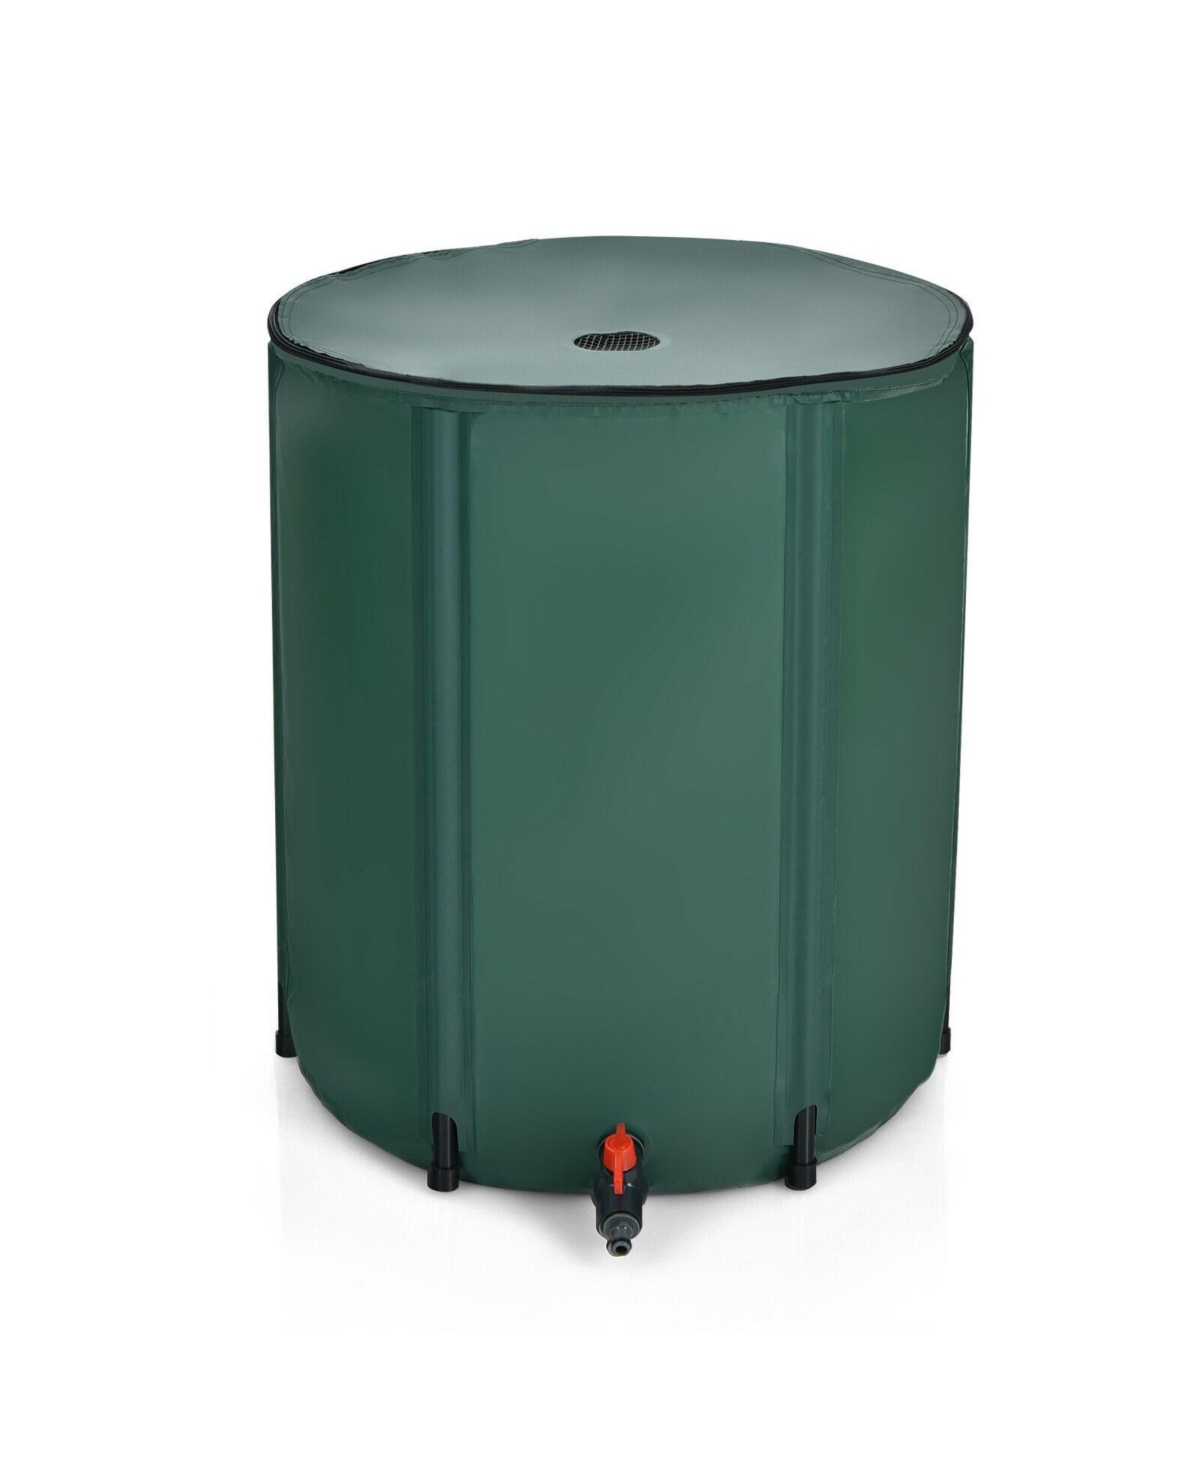 60 Gallon Portable Collapsible Rain Barrel Water Collector - Green